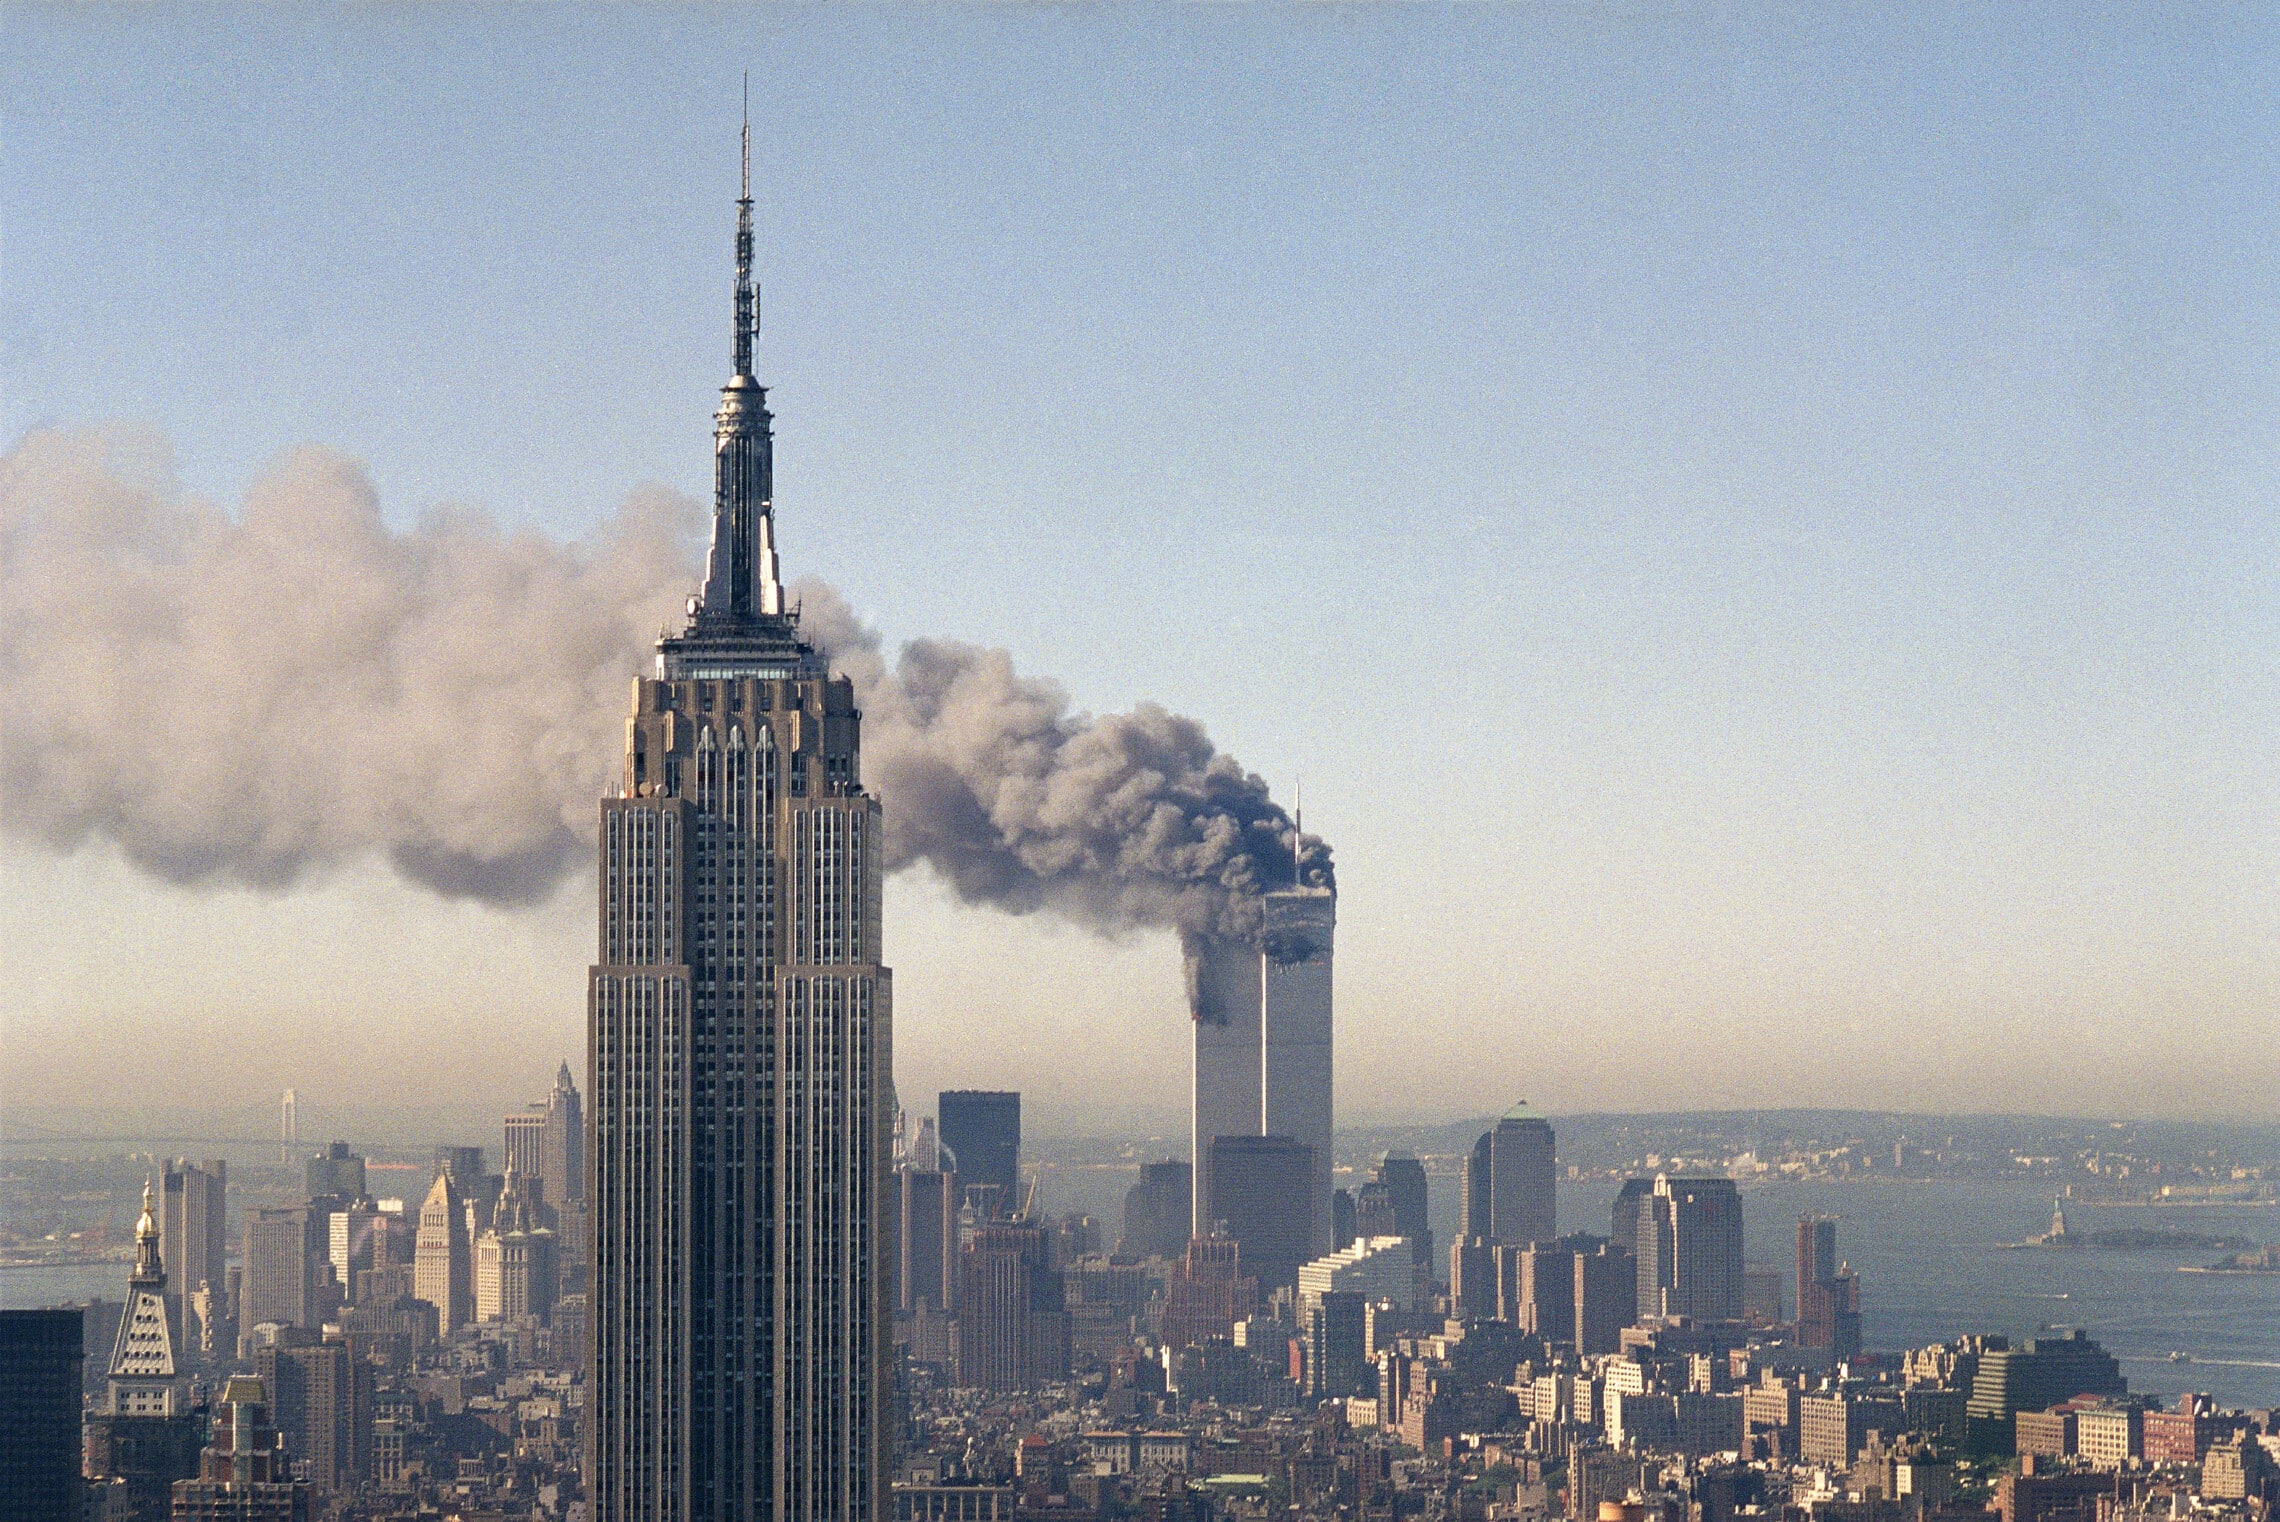 הפיגוע במגדלי התאומים בניו יורק, 11 בספטמבר 2001 (צילום: AP Photo/Marty Lederhandler)